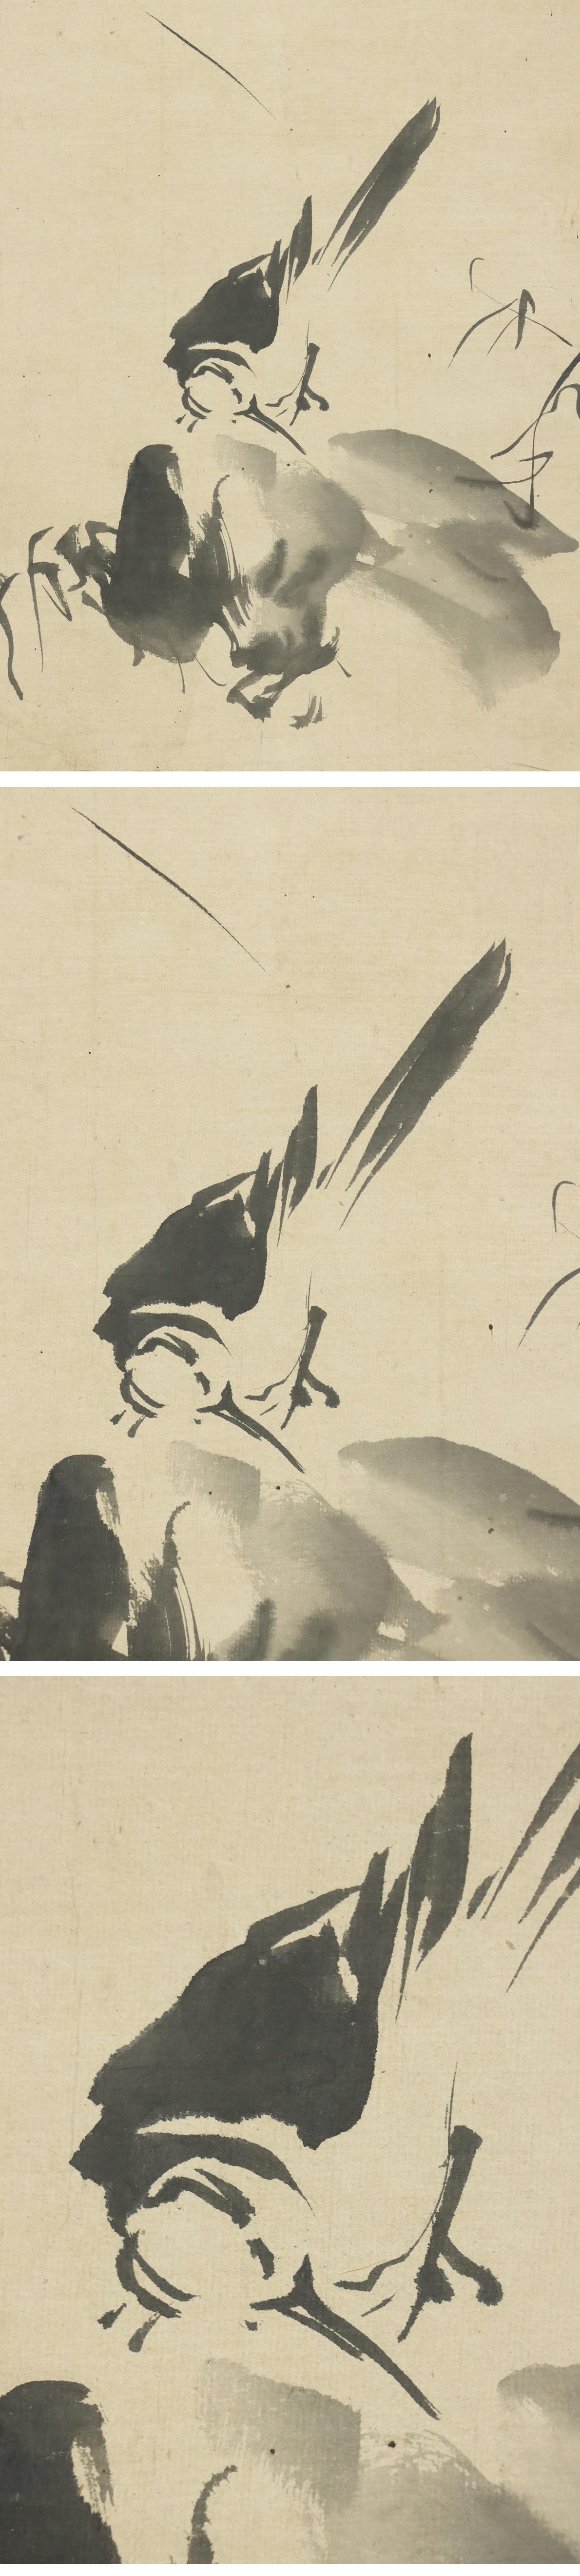 得価国産◆狩野探幽◆鶺鴒◆日本画◆鍛冶屋橋狩野派初代◆紙本◆掛軸◆m323 花鳥、鳥獣